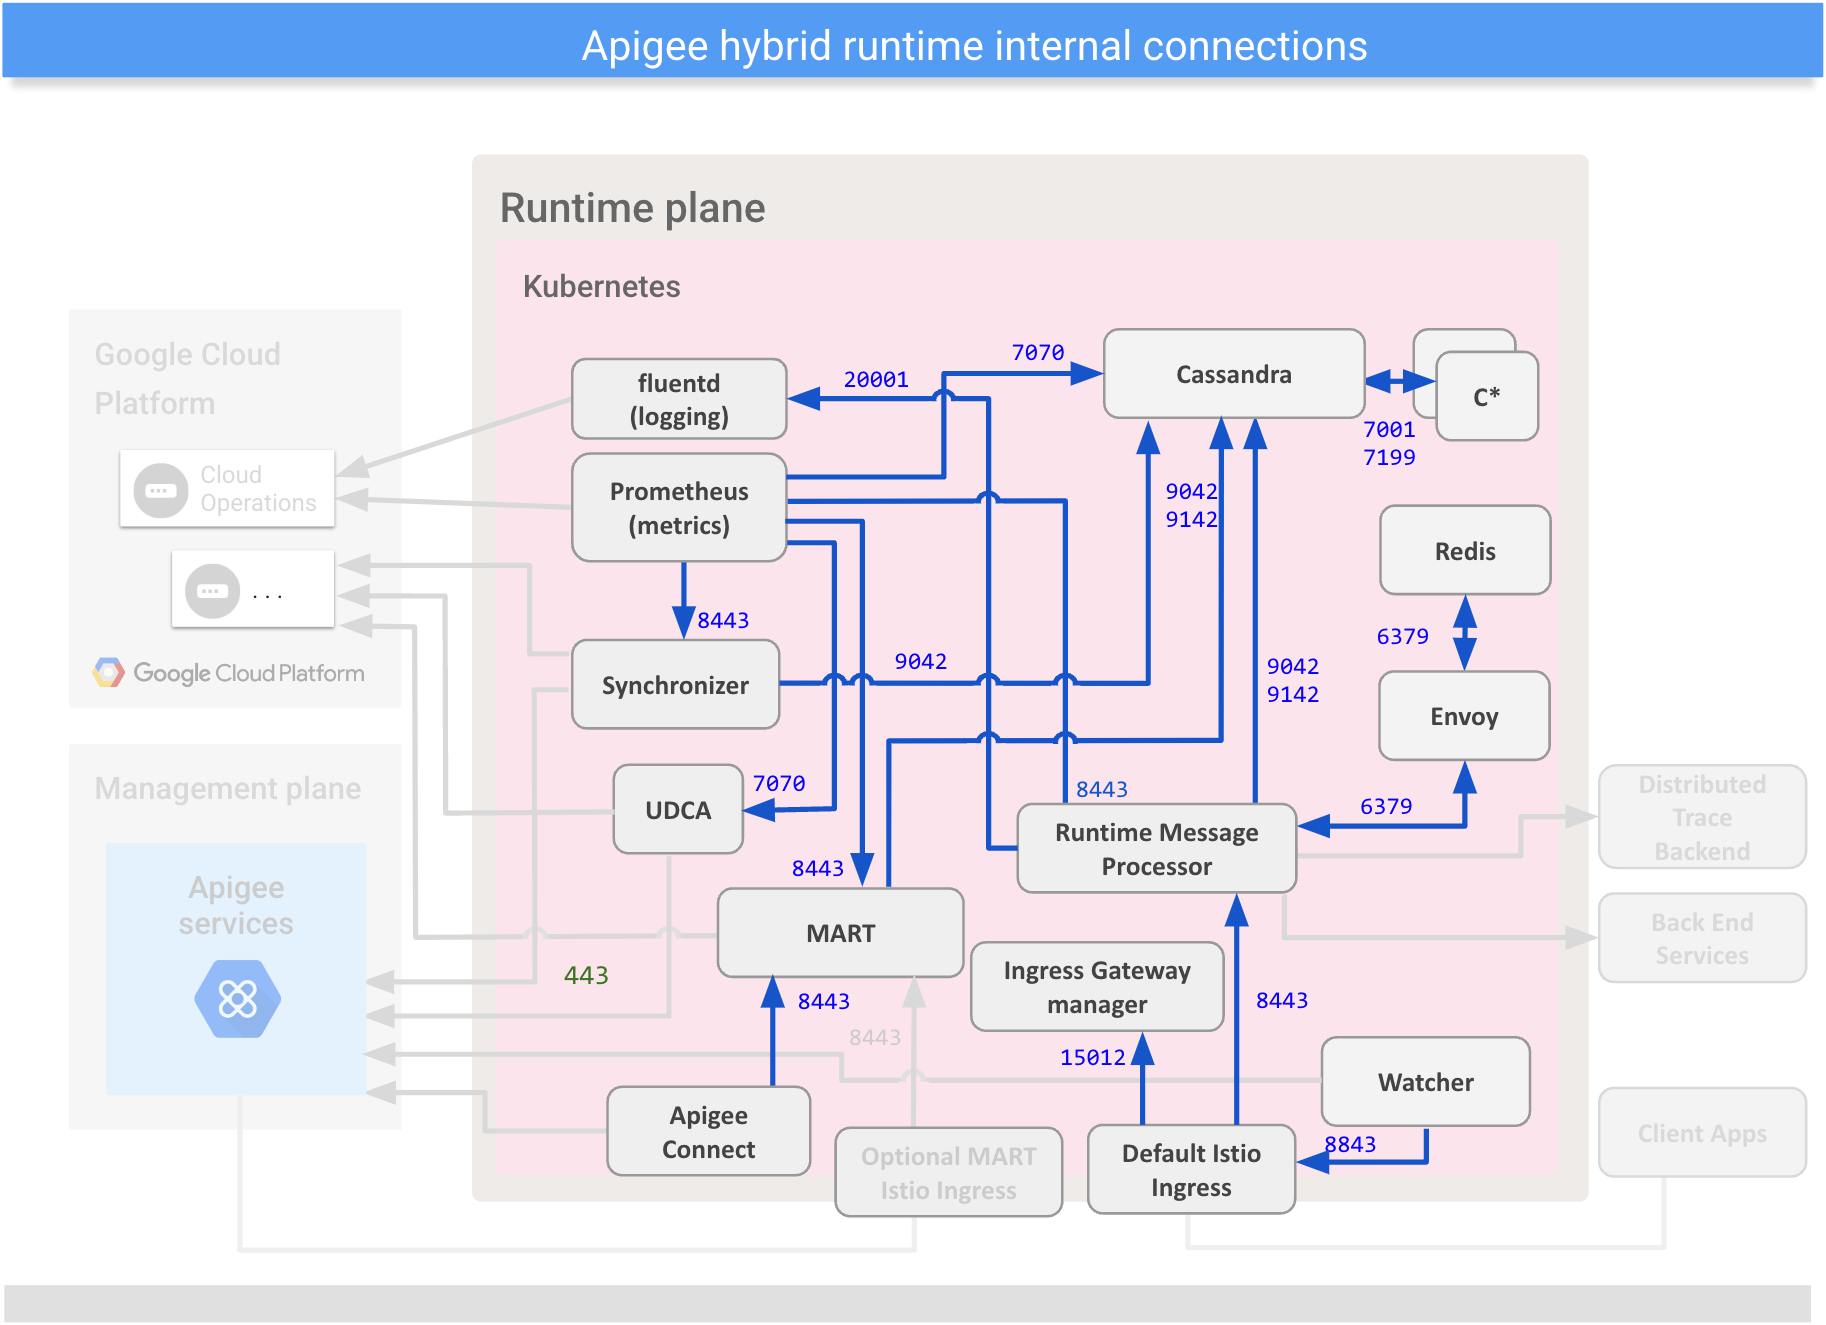 Menampilkan koneksi
antara komponen internal pada bidang runtime hybrid